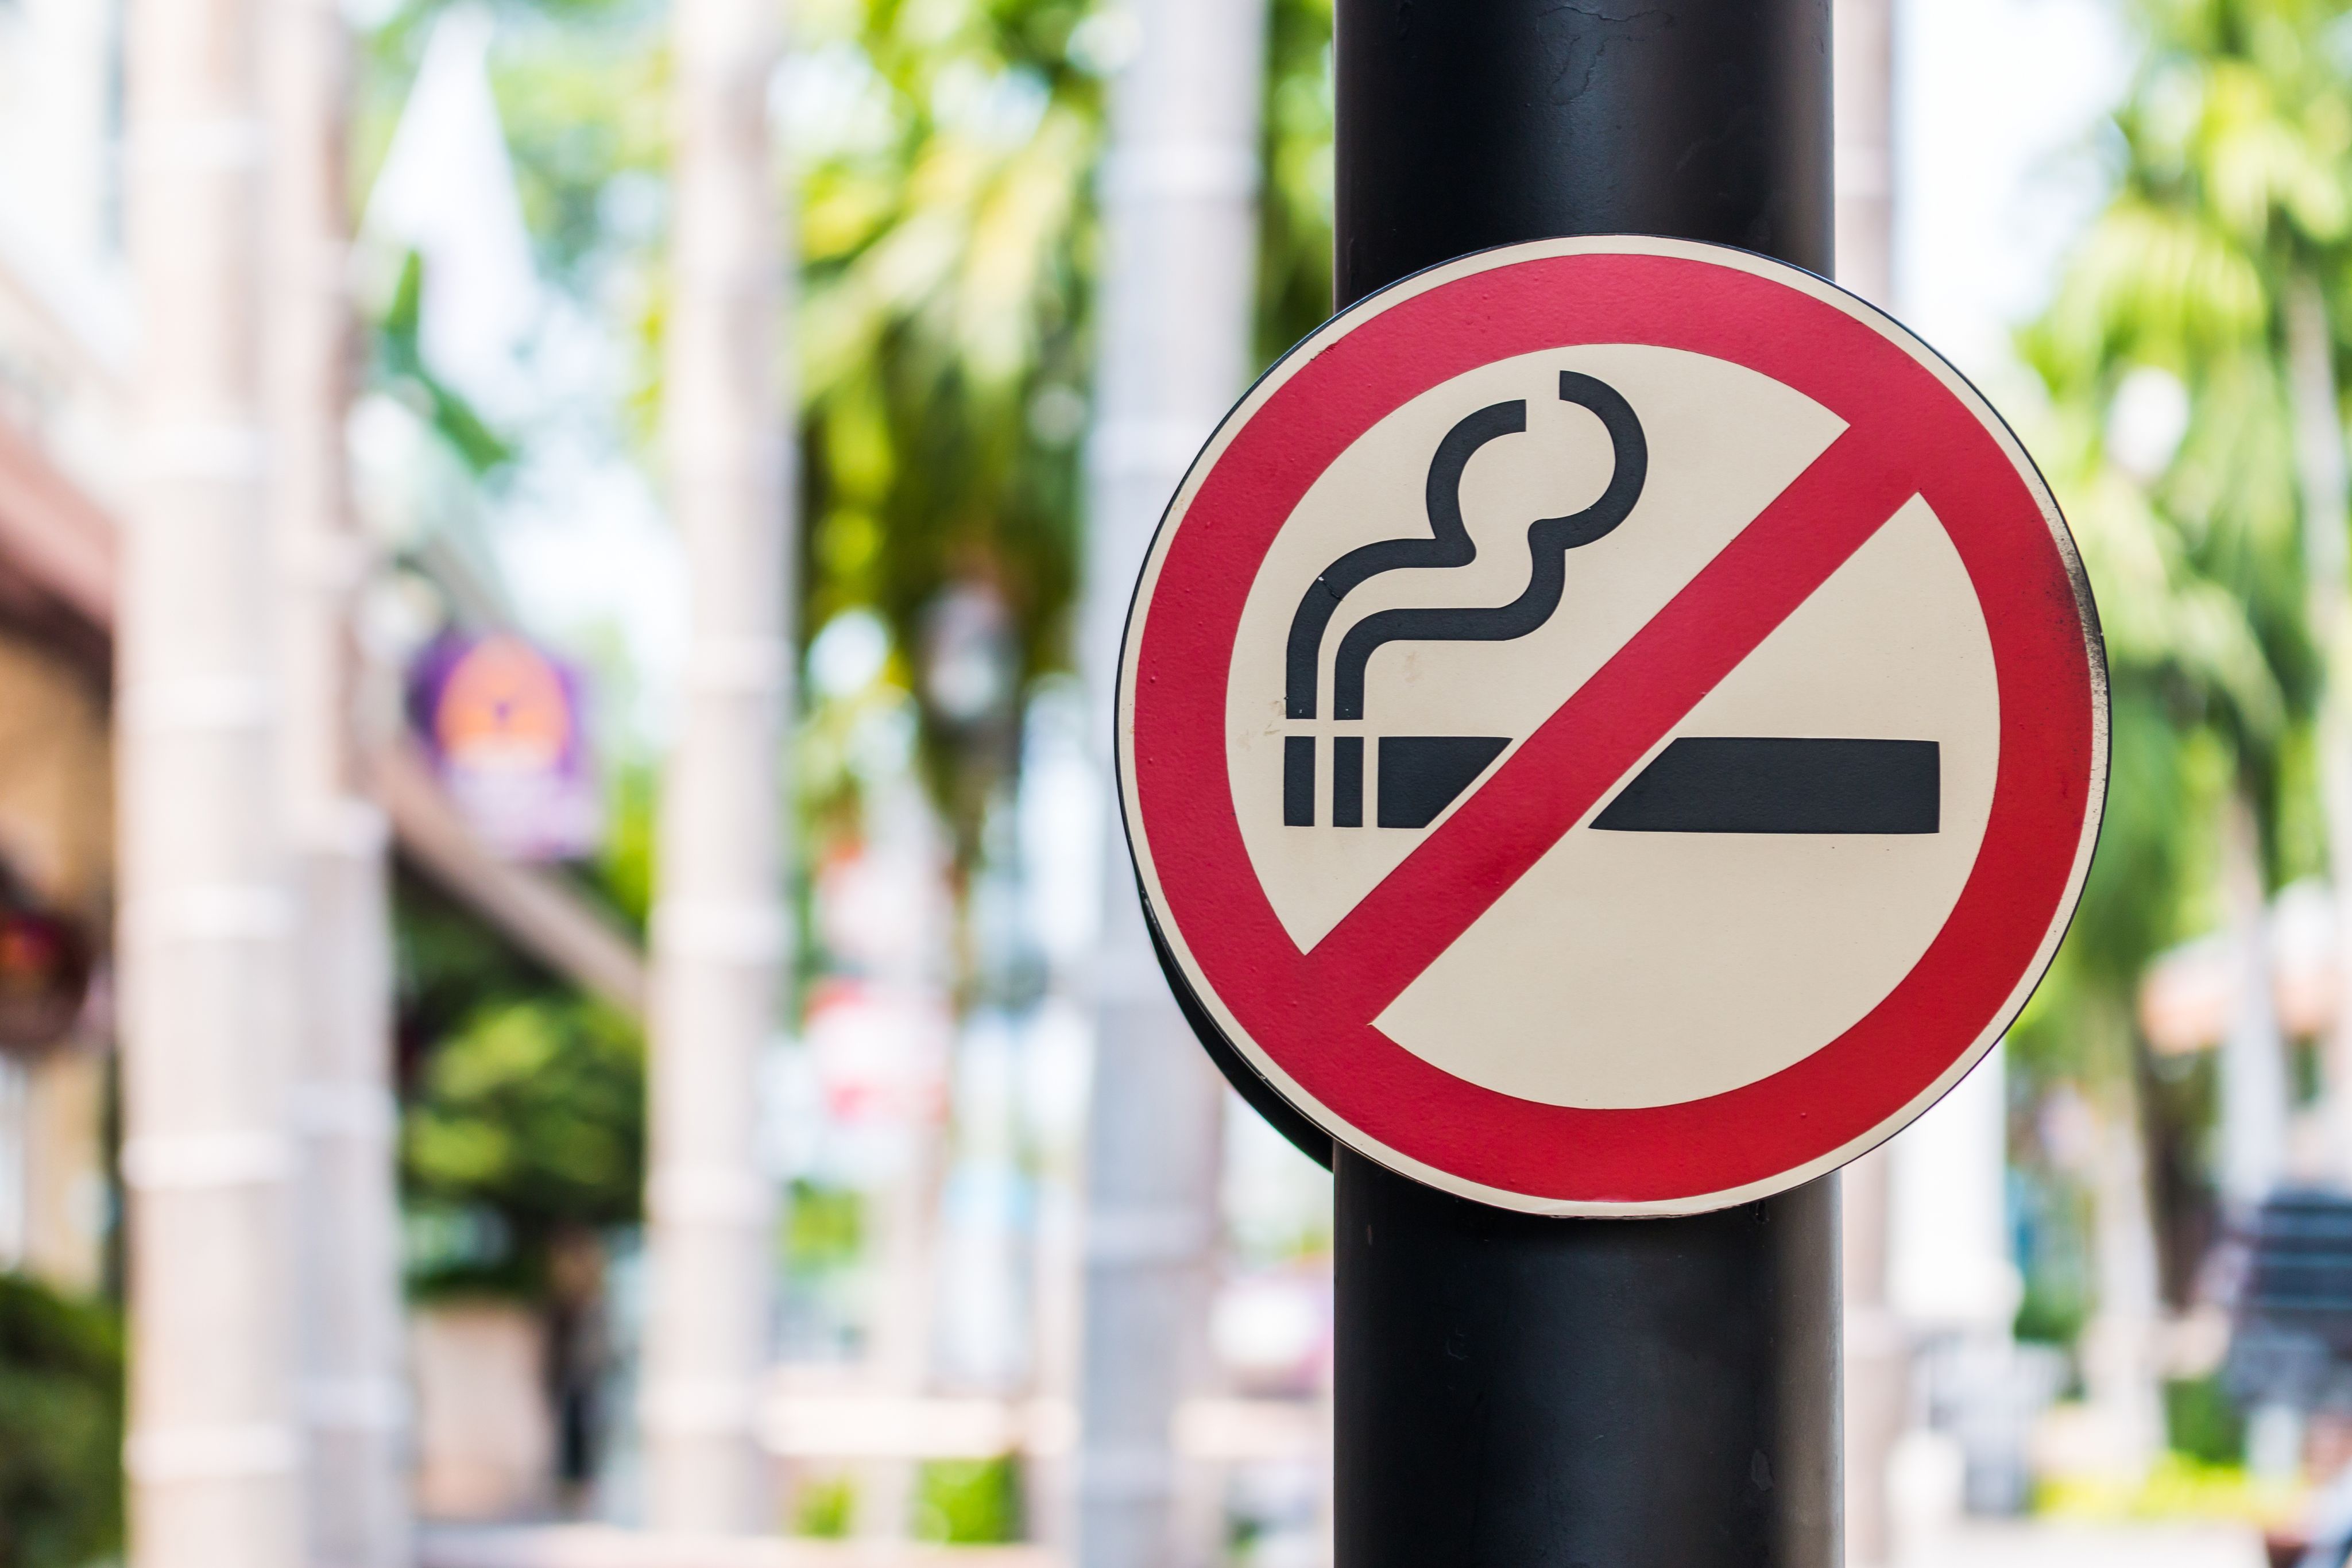 A non-smoking sign